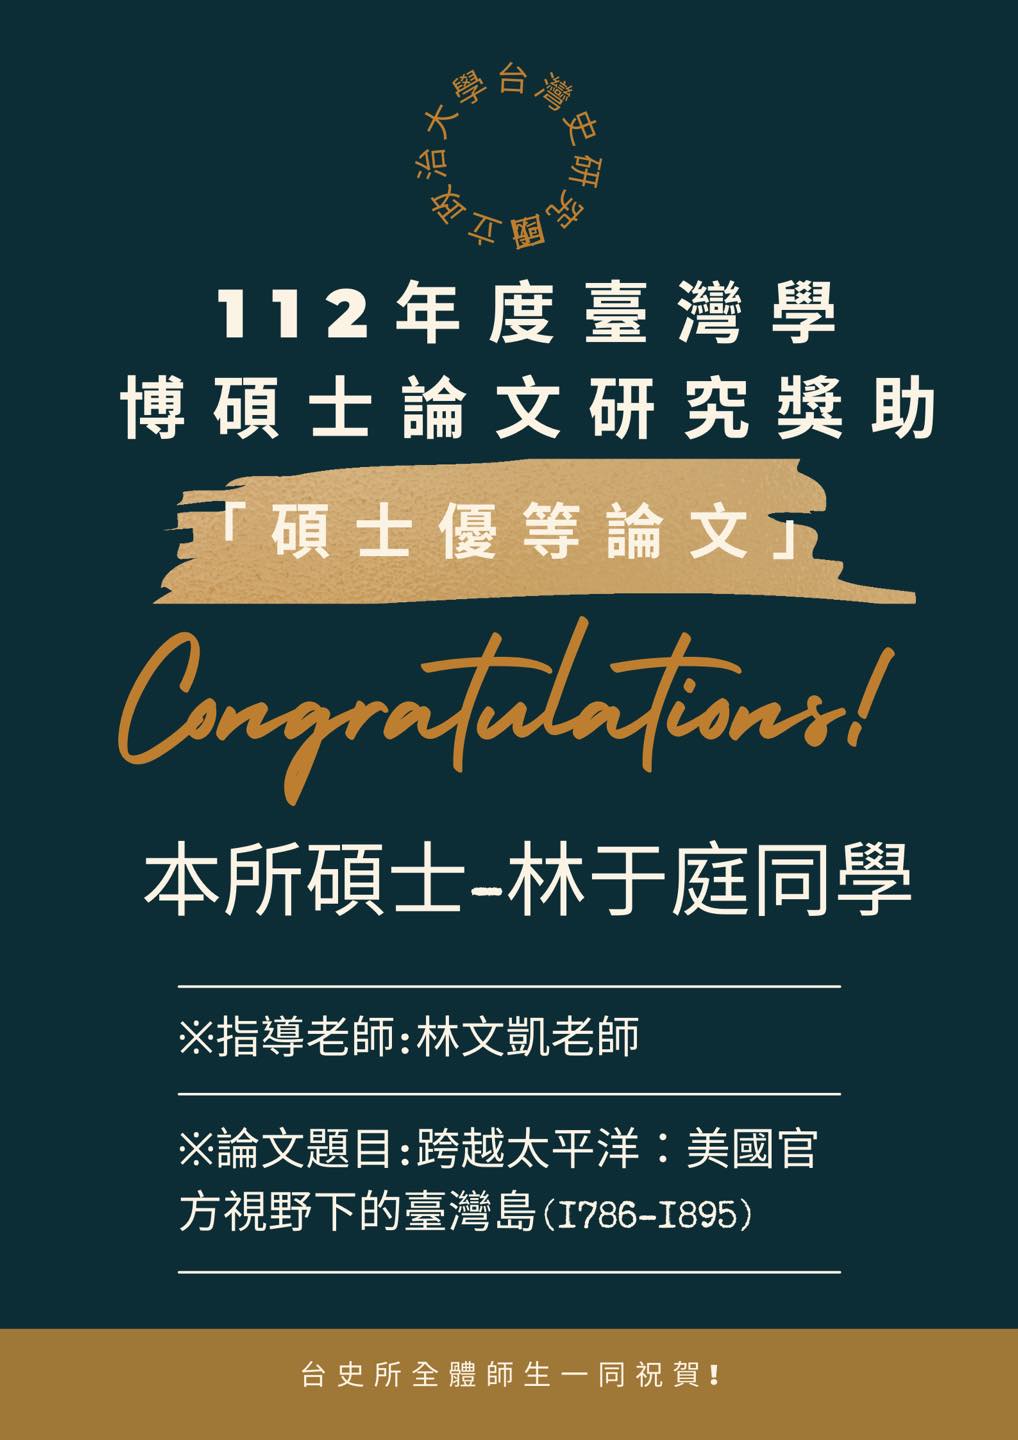 【恭賀】林于庭同學獲112年度臺灣學博碩士論文研究獎助—「碩士優等論文」